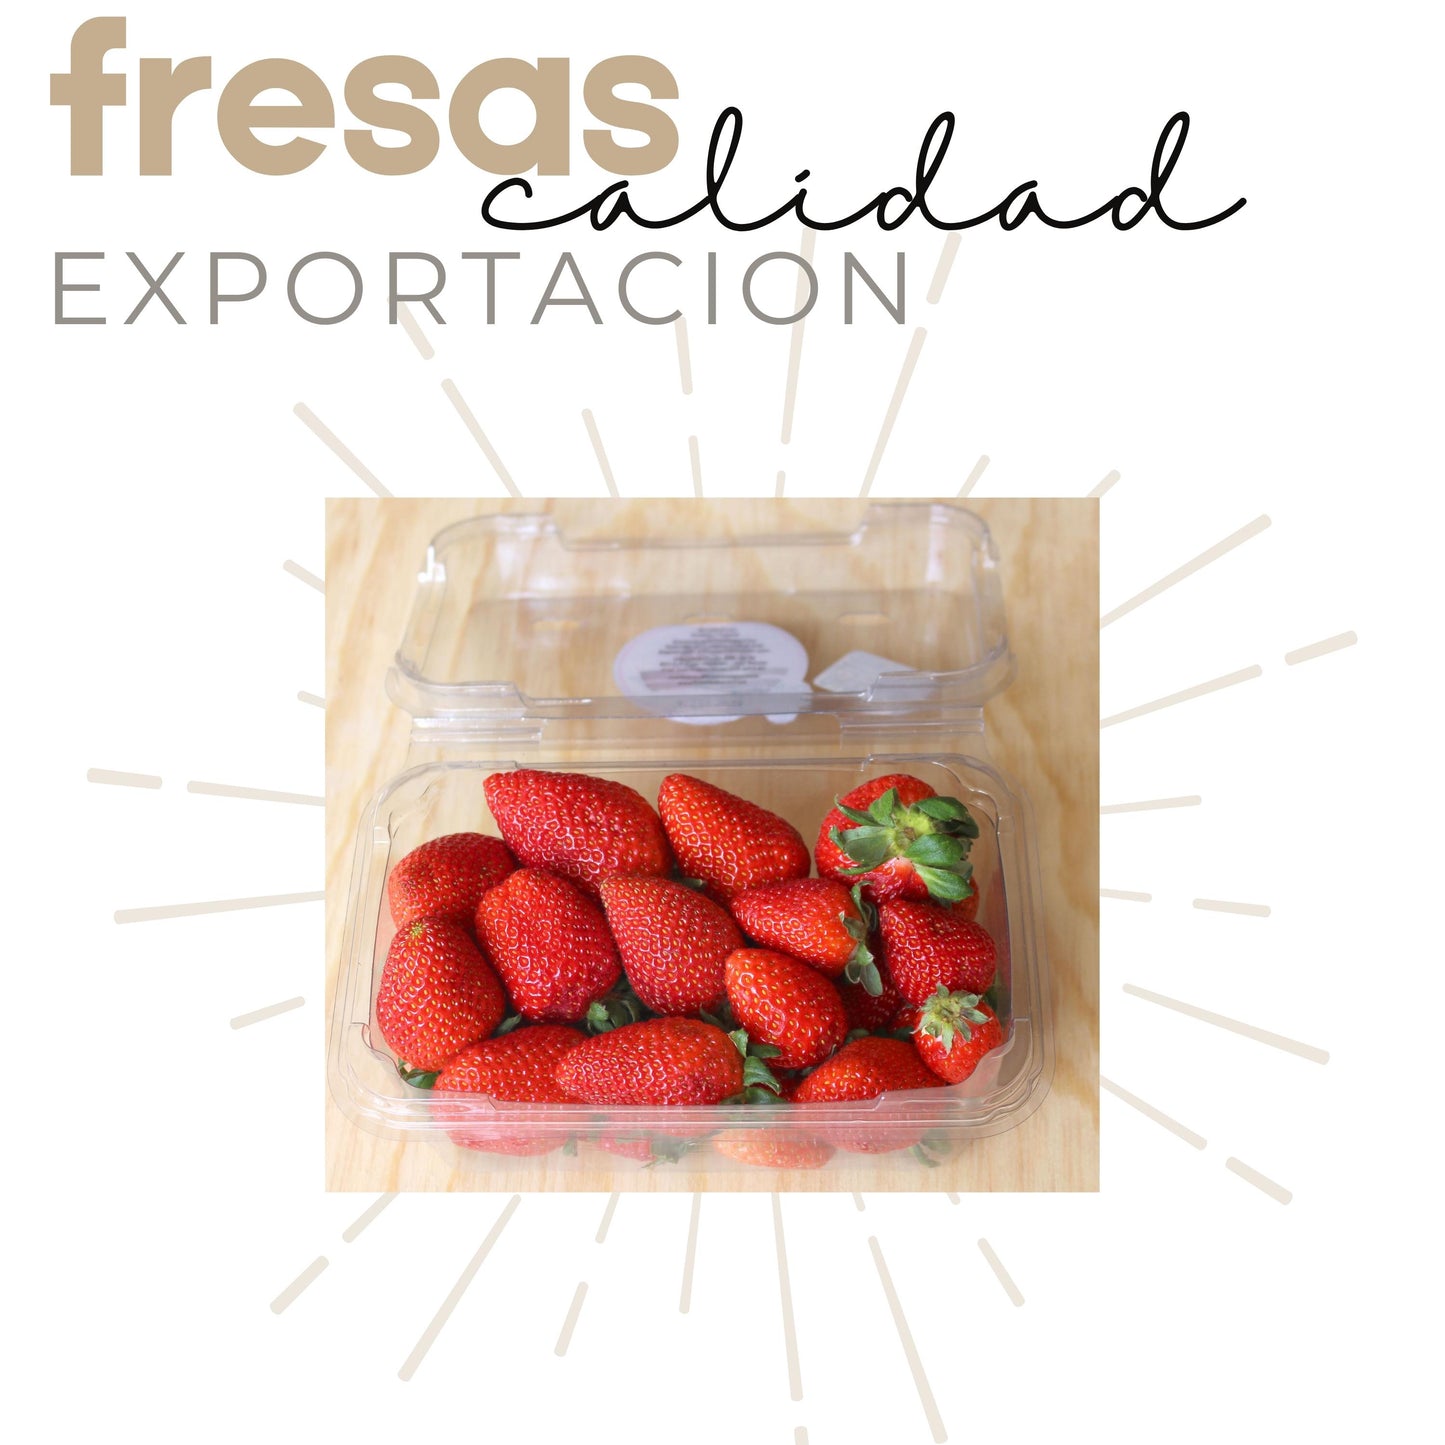 Fresas Con Chile | Fresas Cristalizadas | Caja Mayoreo | Mexpofood